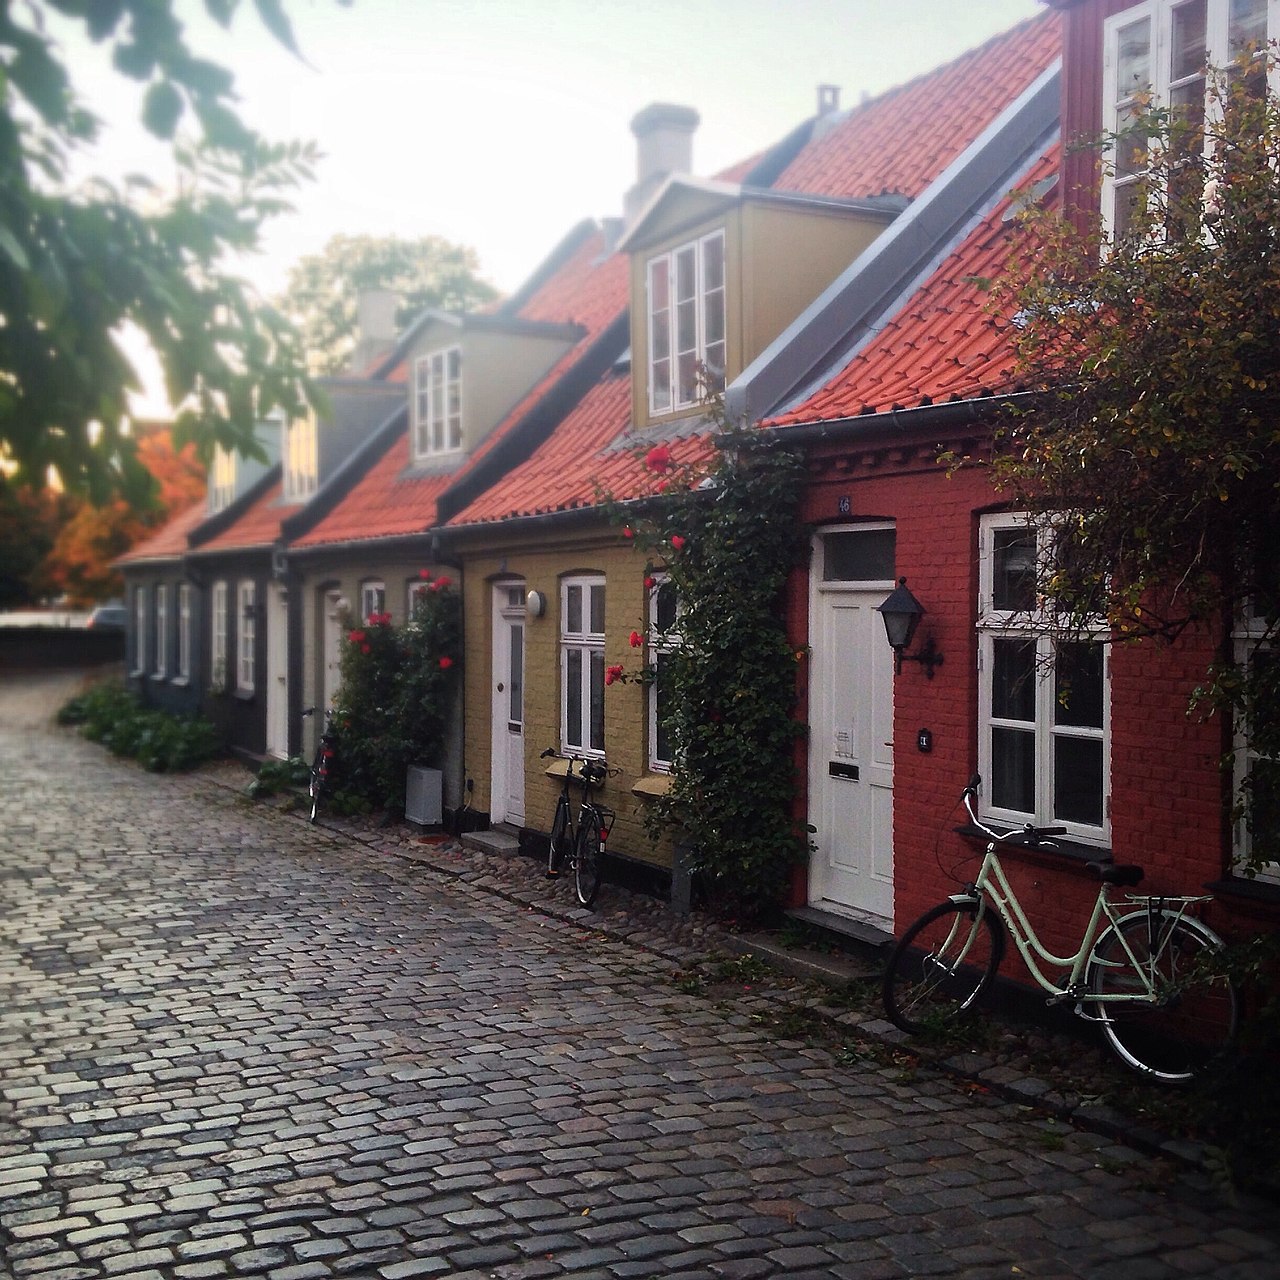 Møllestien è una strada della città di Aahrus fatto da tante piccole case a schiera. Møllestien fu probabilmente creata in co